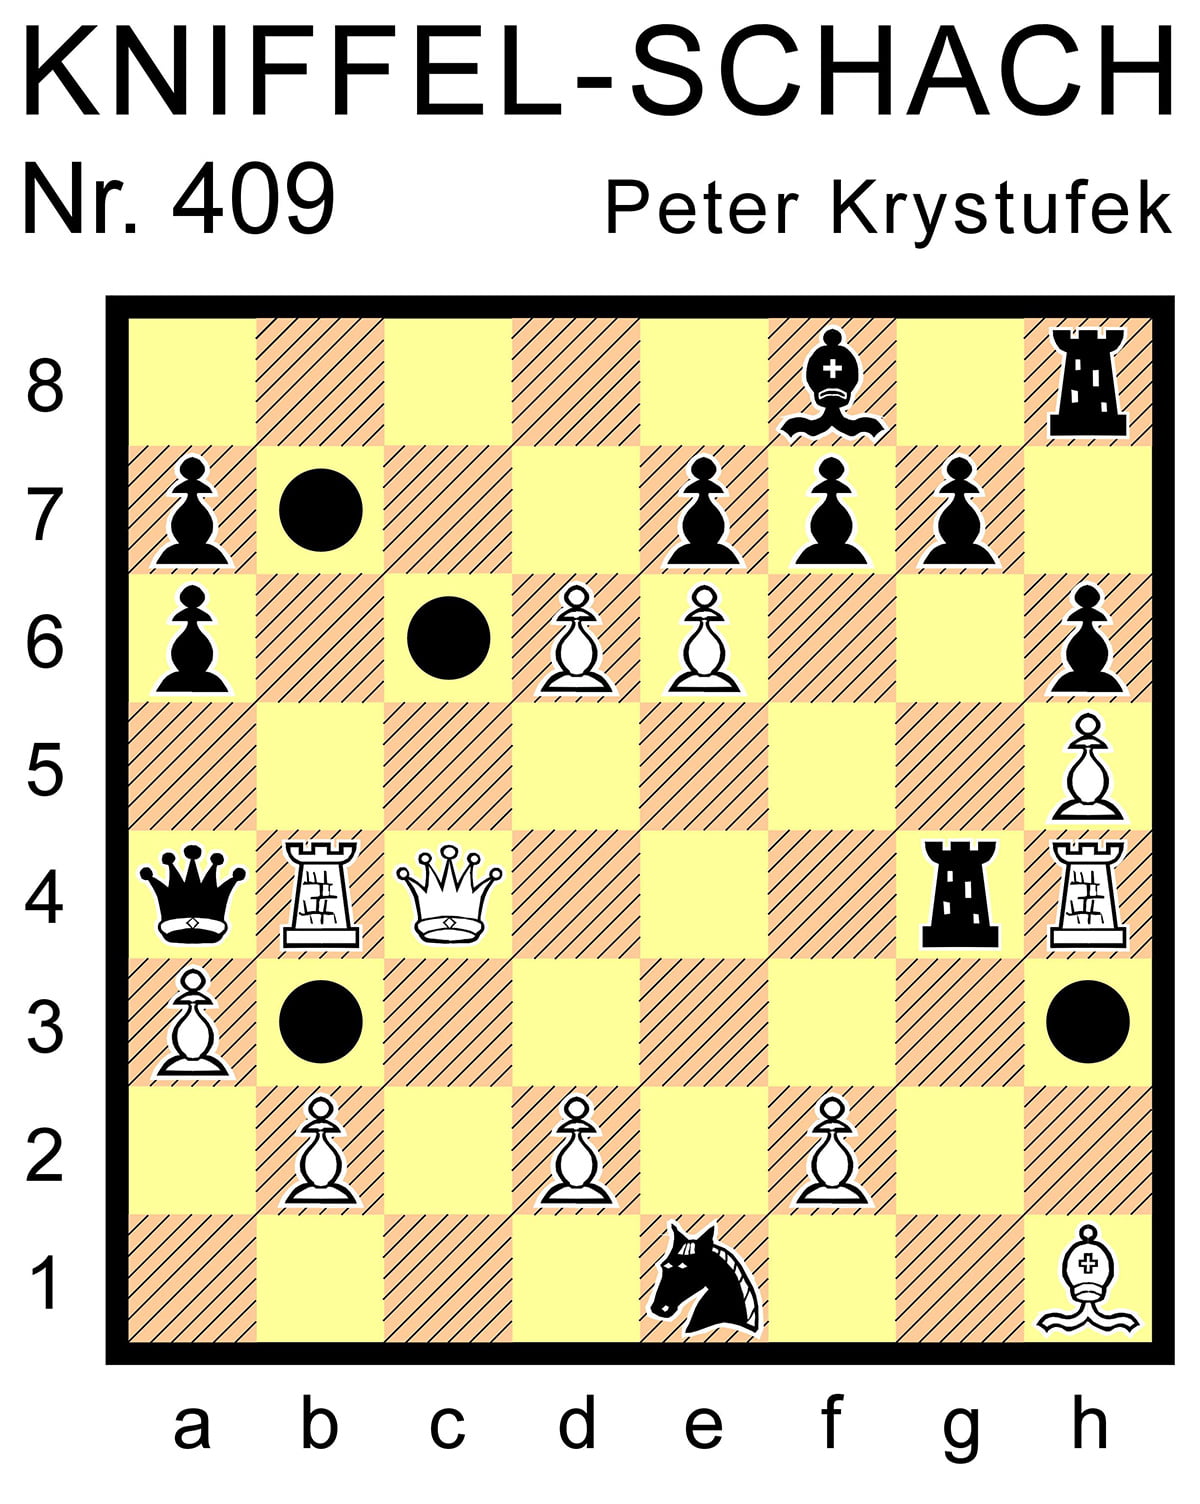 Kniffel-Schach Nr. 409